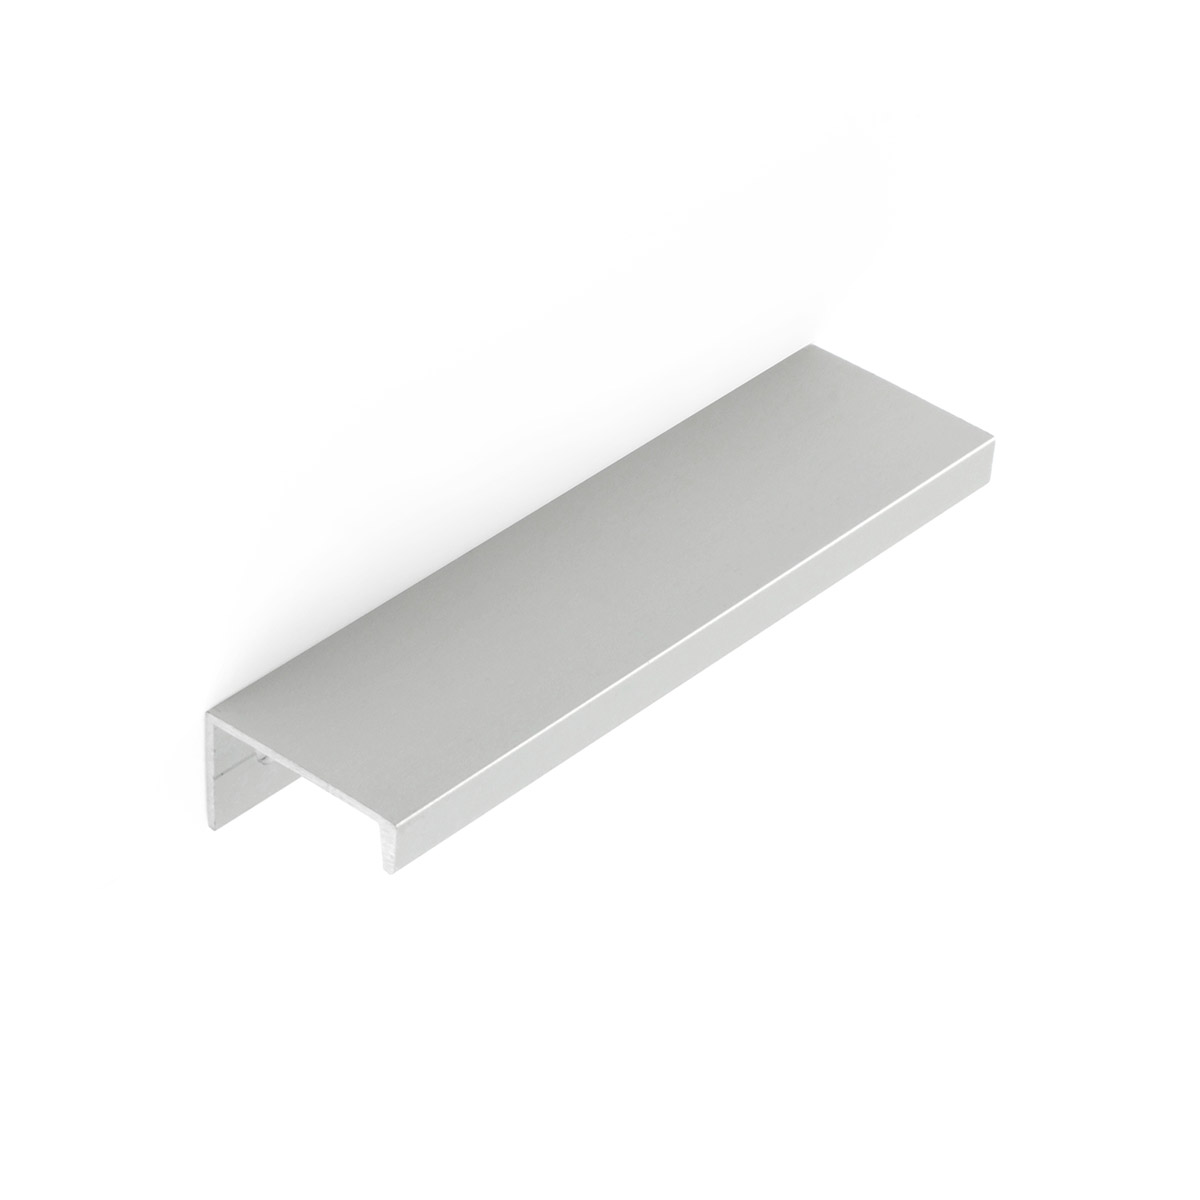 Asa de aluminio con acabado anodizado mate, dimensiones:116x18x32mm y entrepuntos:96mm